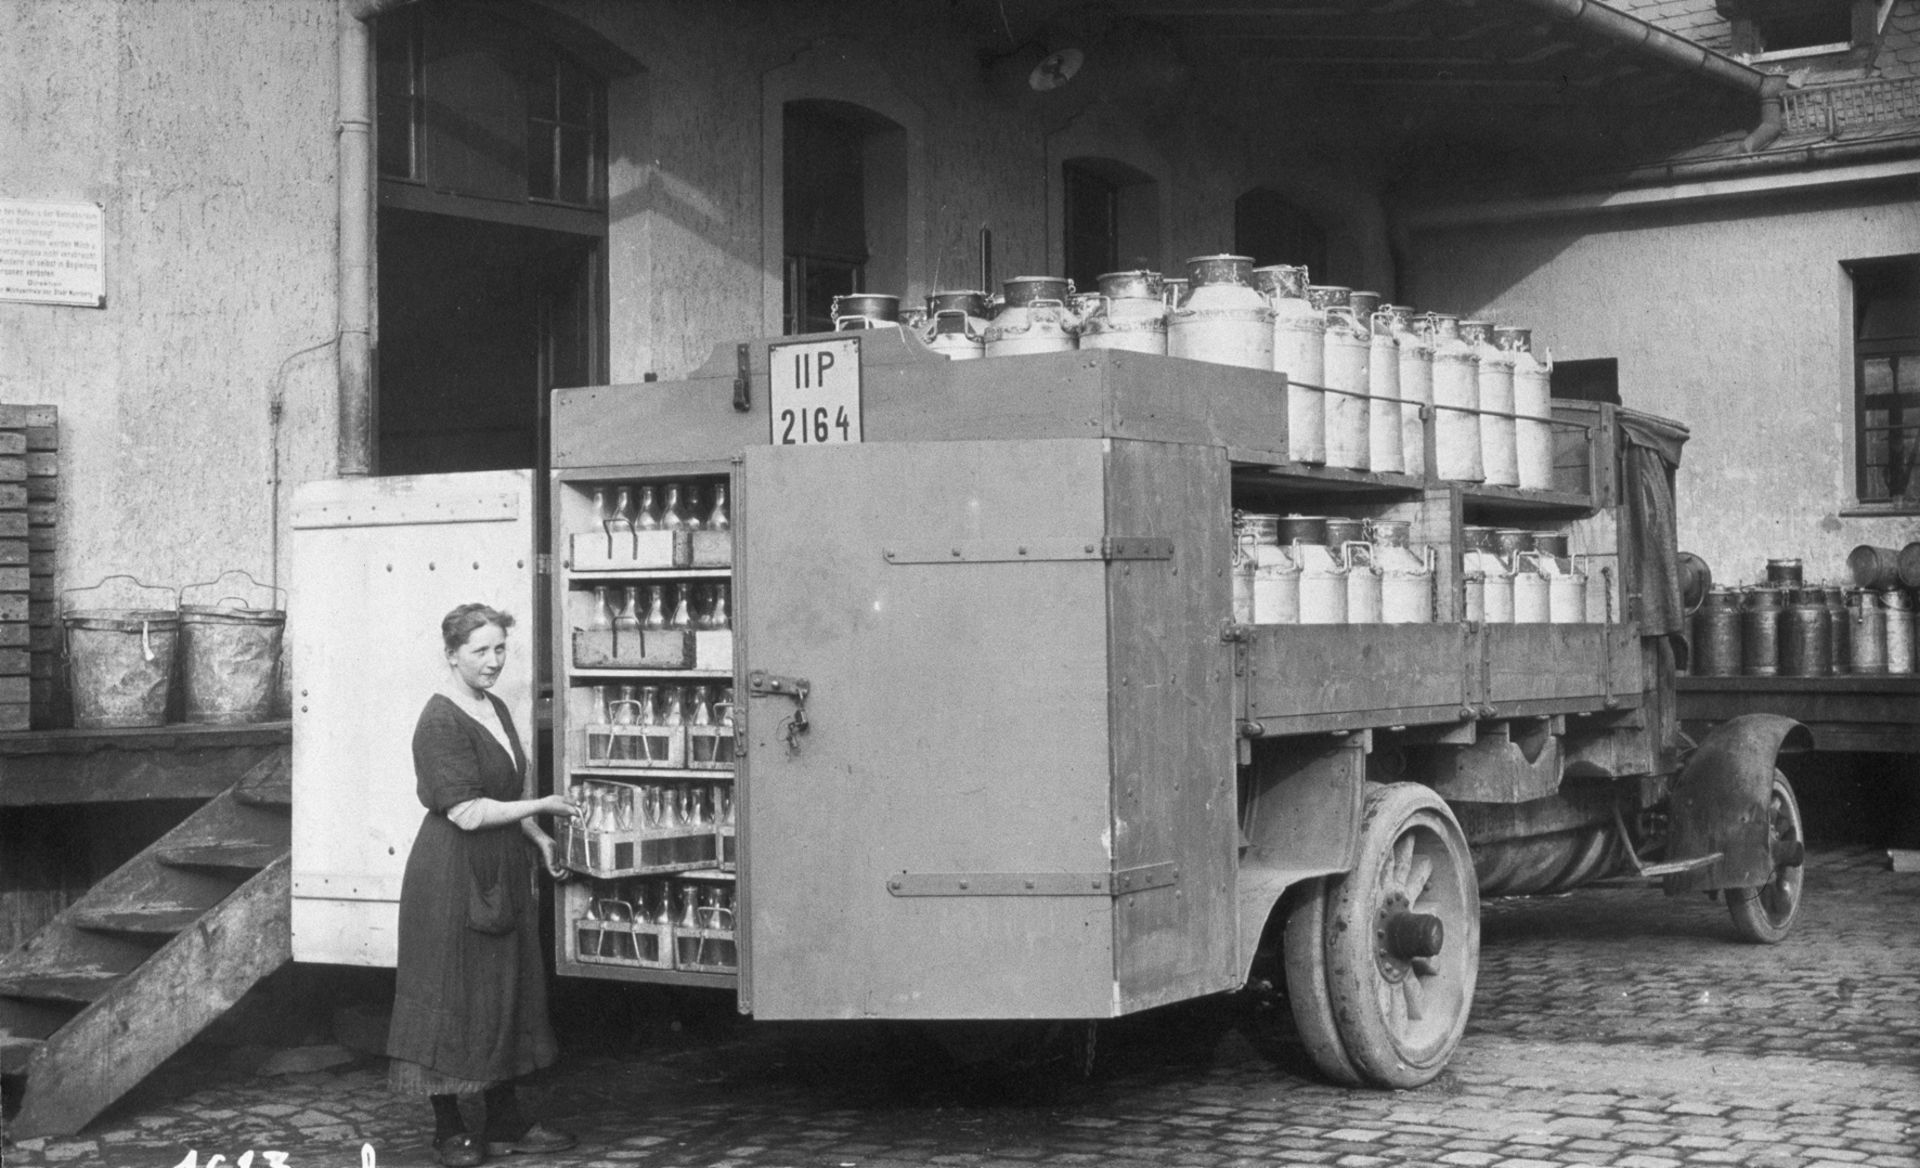 Schwarz-weiß Bild eines alten MAN Milchtransporters